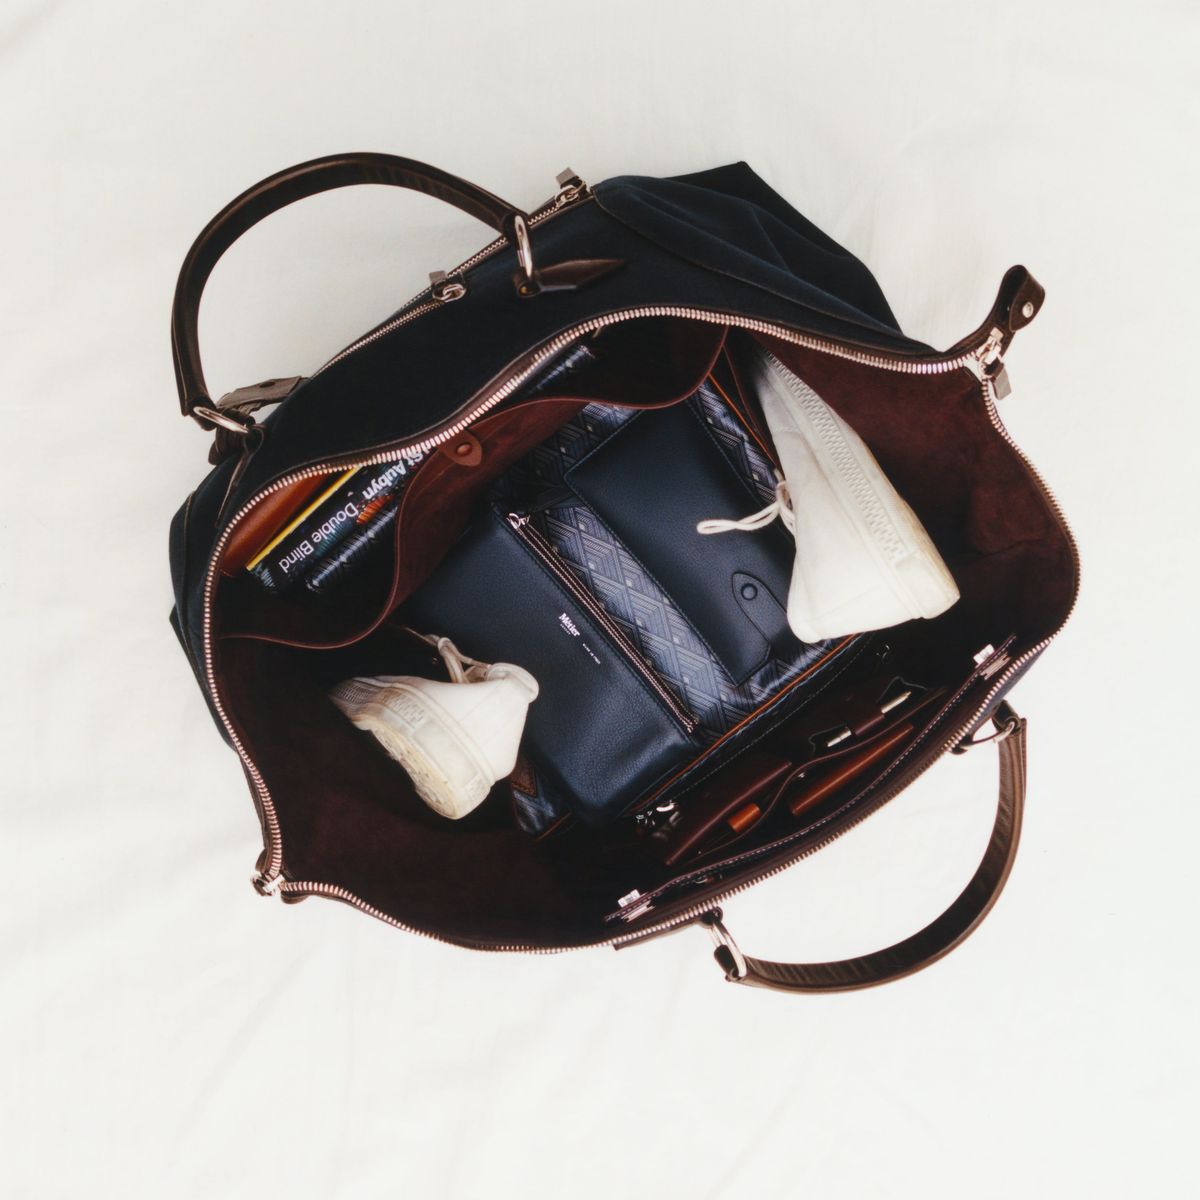 Métier: Luksuzna blagovna znamka uporabnih torb z oboževalci od Kate Middleton do Kate Moss